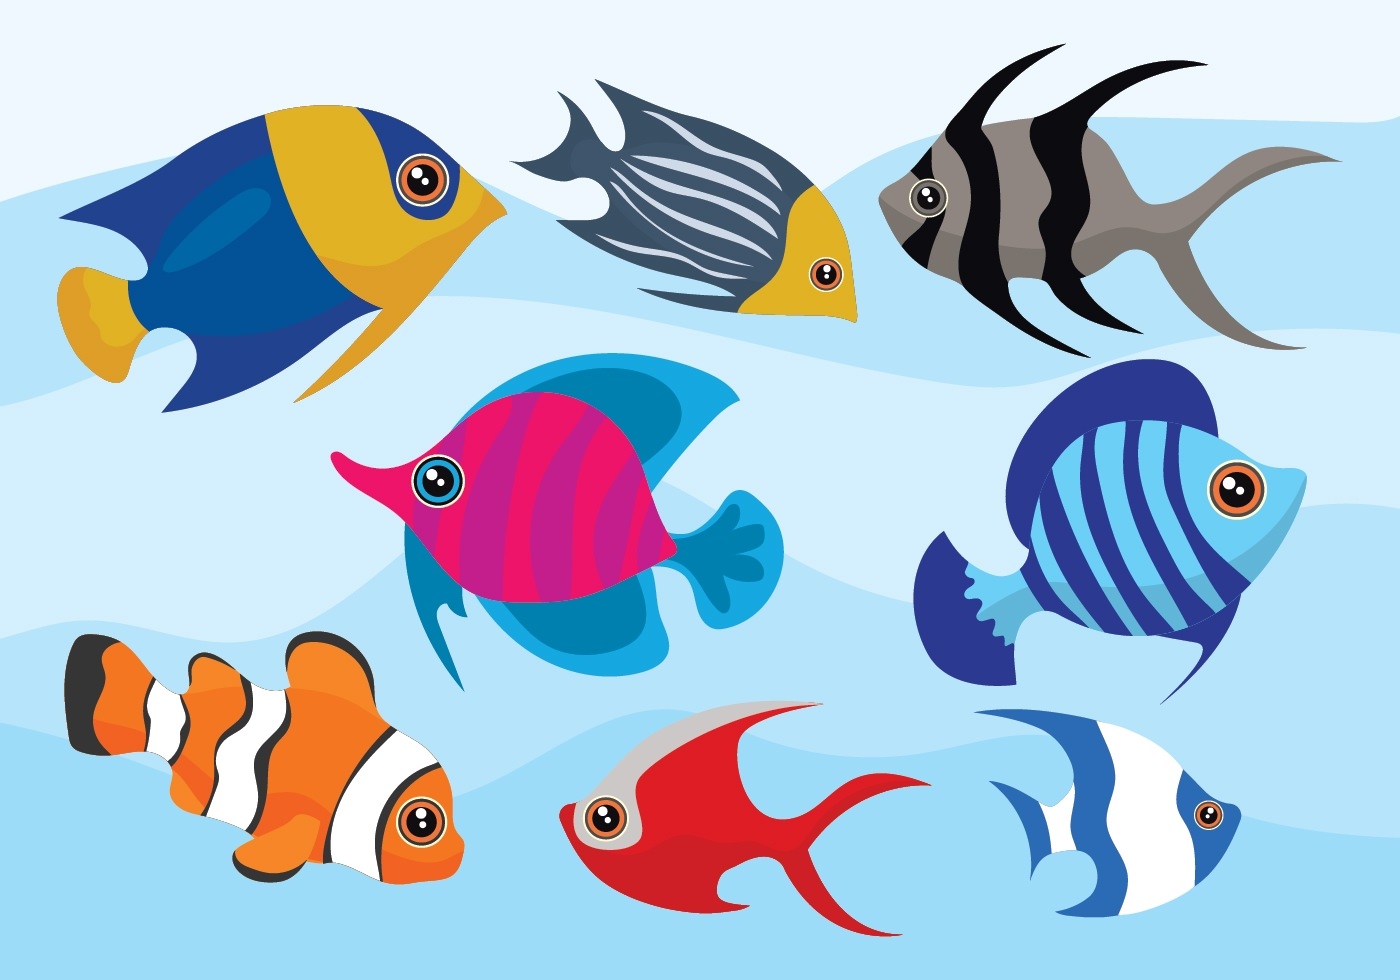 Live more fish. Мультяшные рыбки. Рыбка картинка для детей. Аквариумные рыбки для вырезания. Рыбки цветные для вырезания.